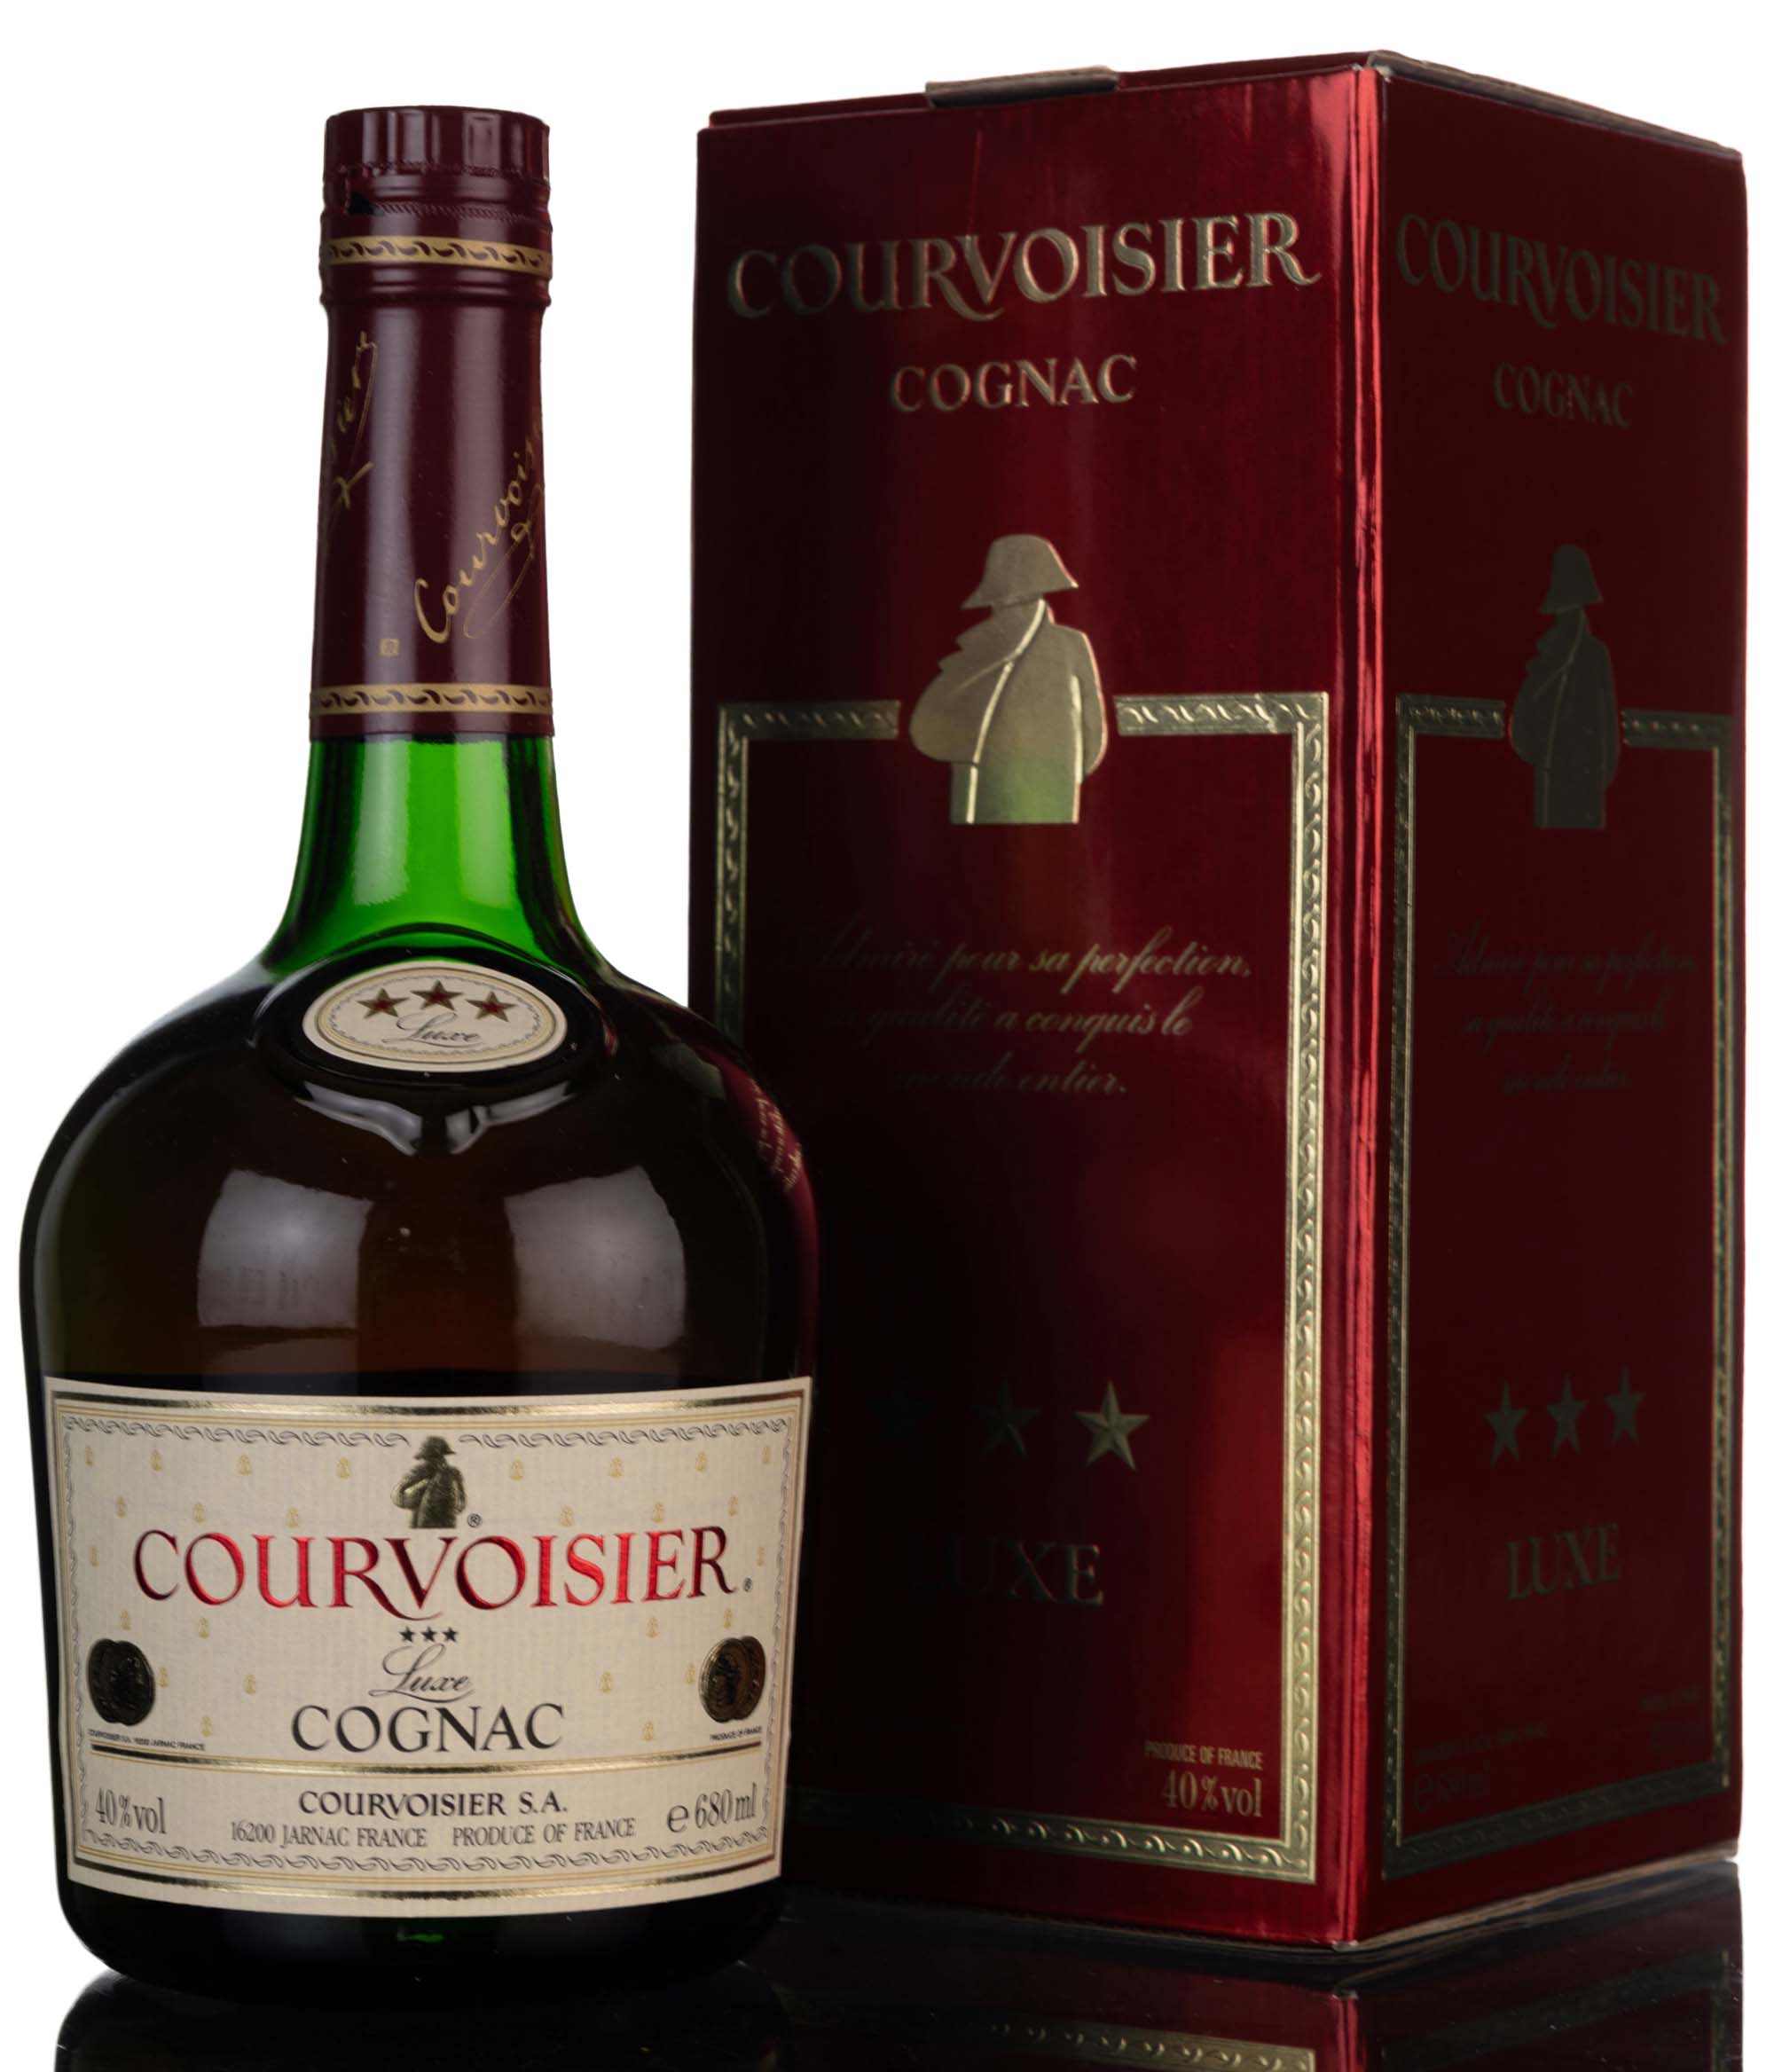 Courvoisier Luxe 3 Star Cognac